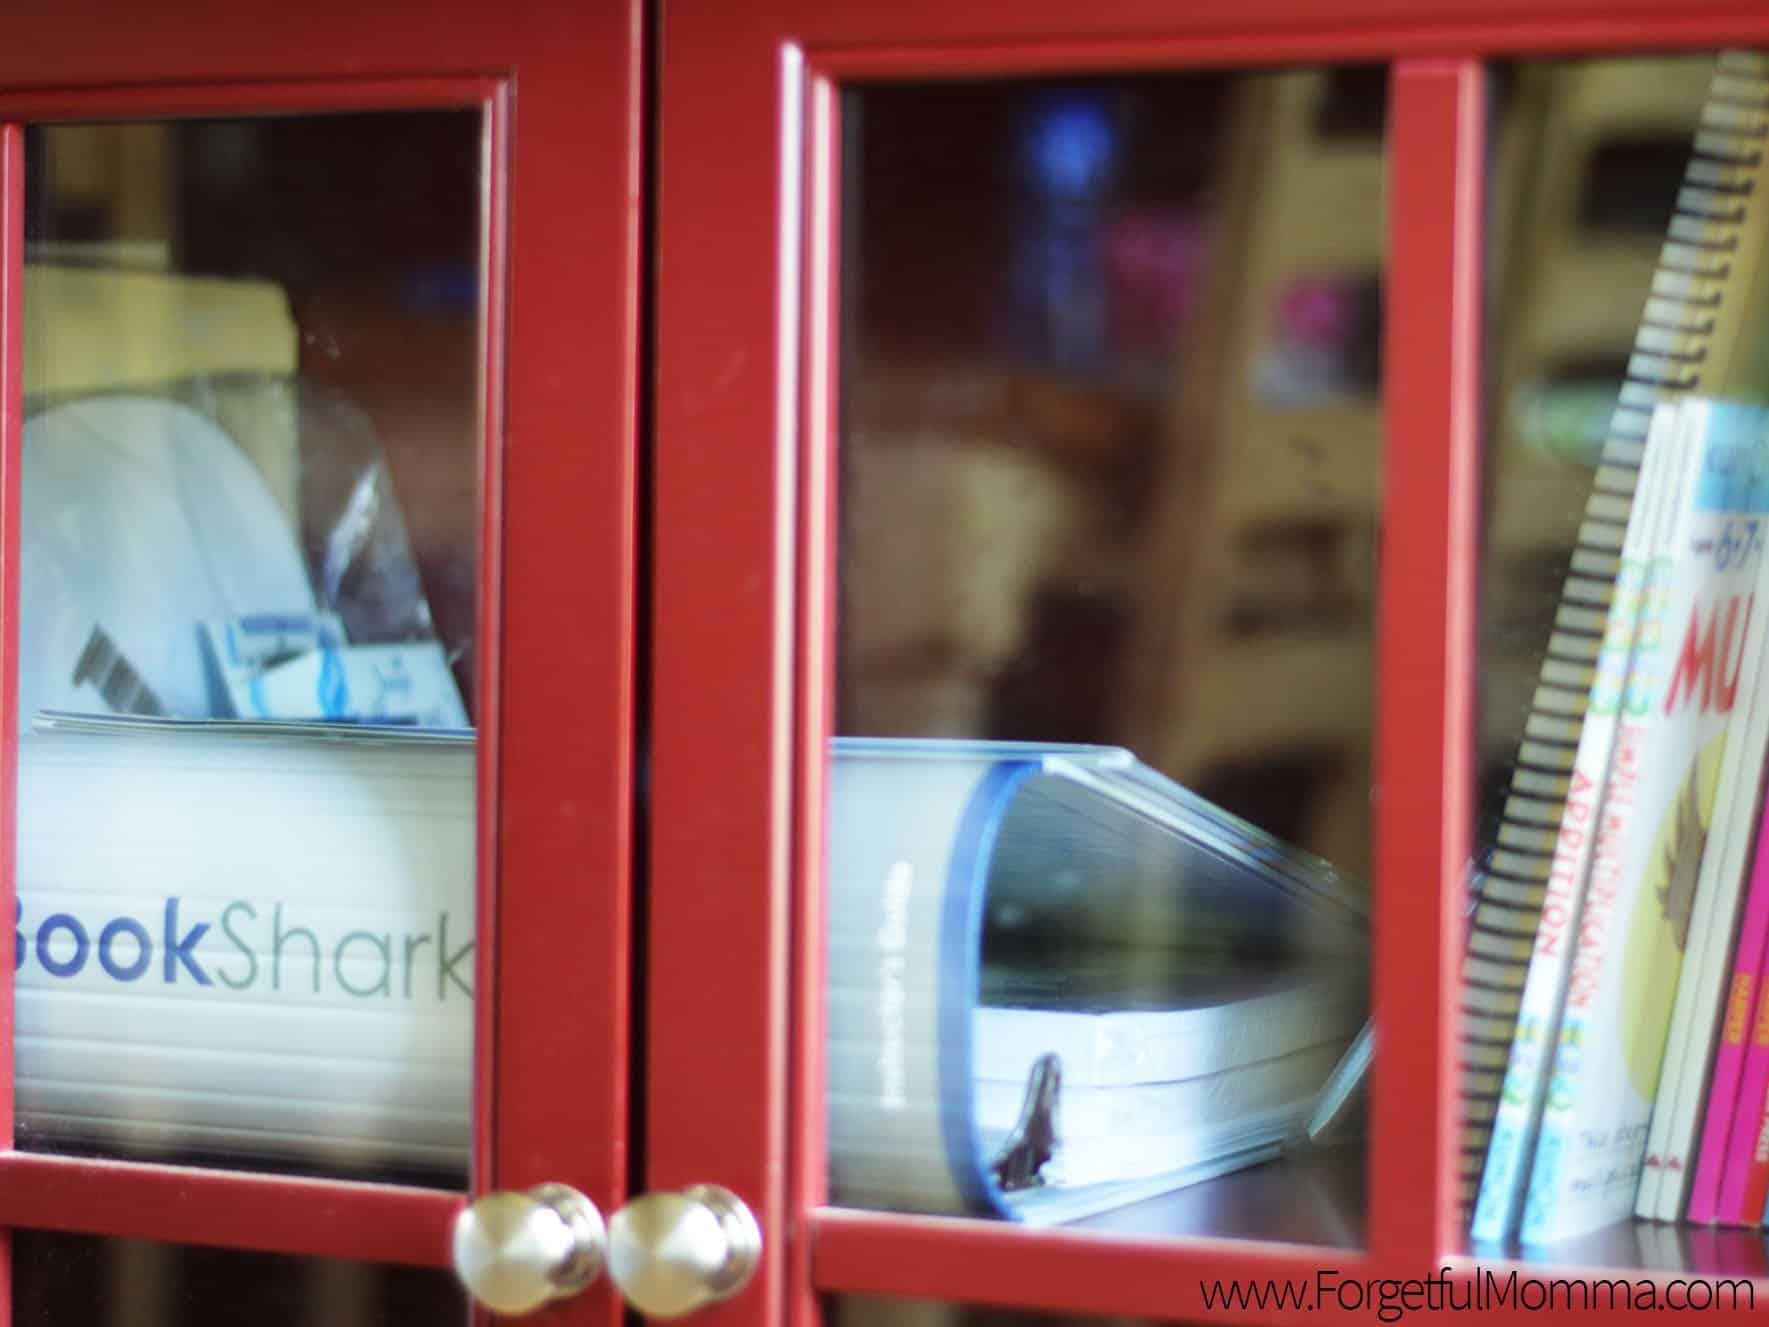 Storage - BookShark Binder - No Homeschool Room